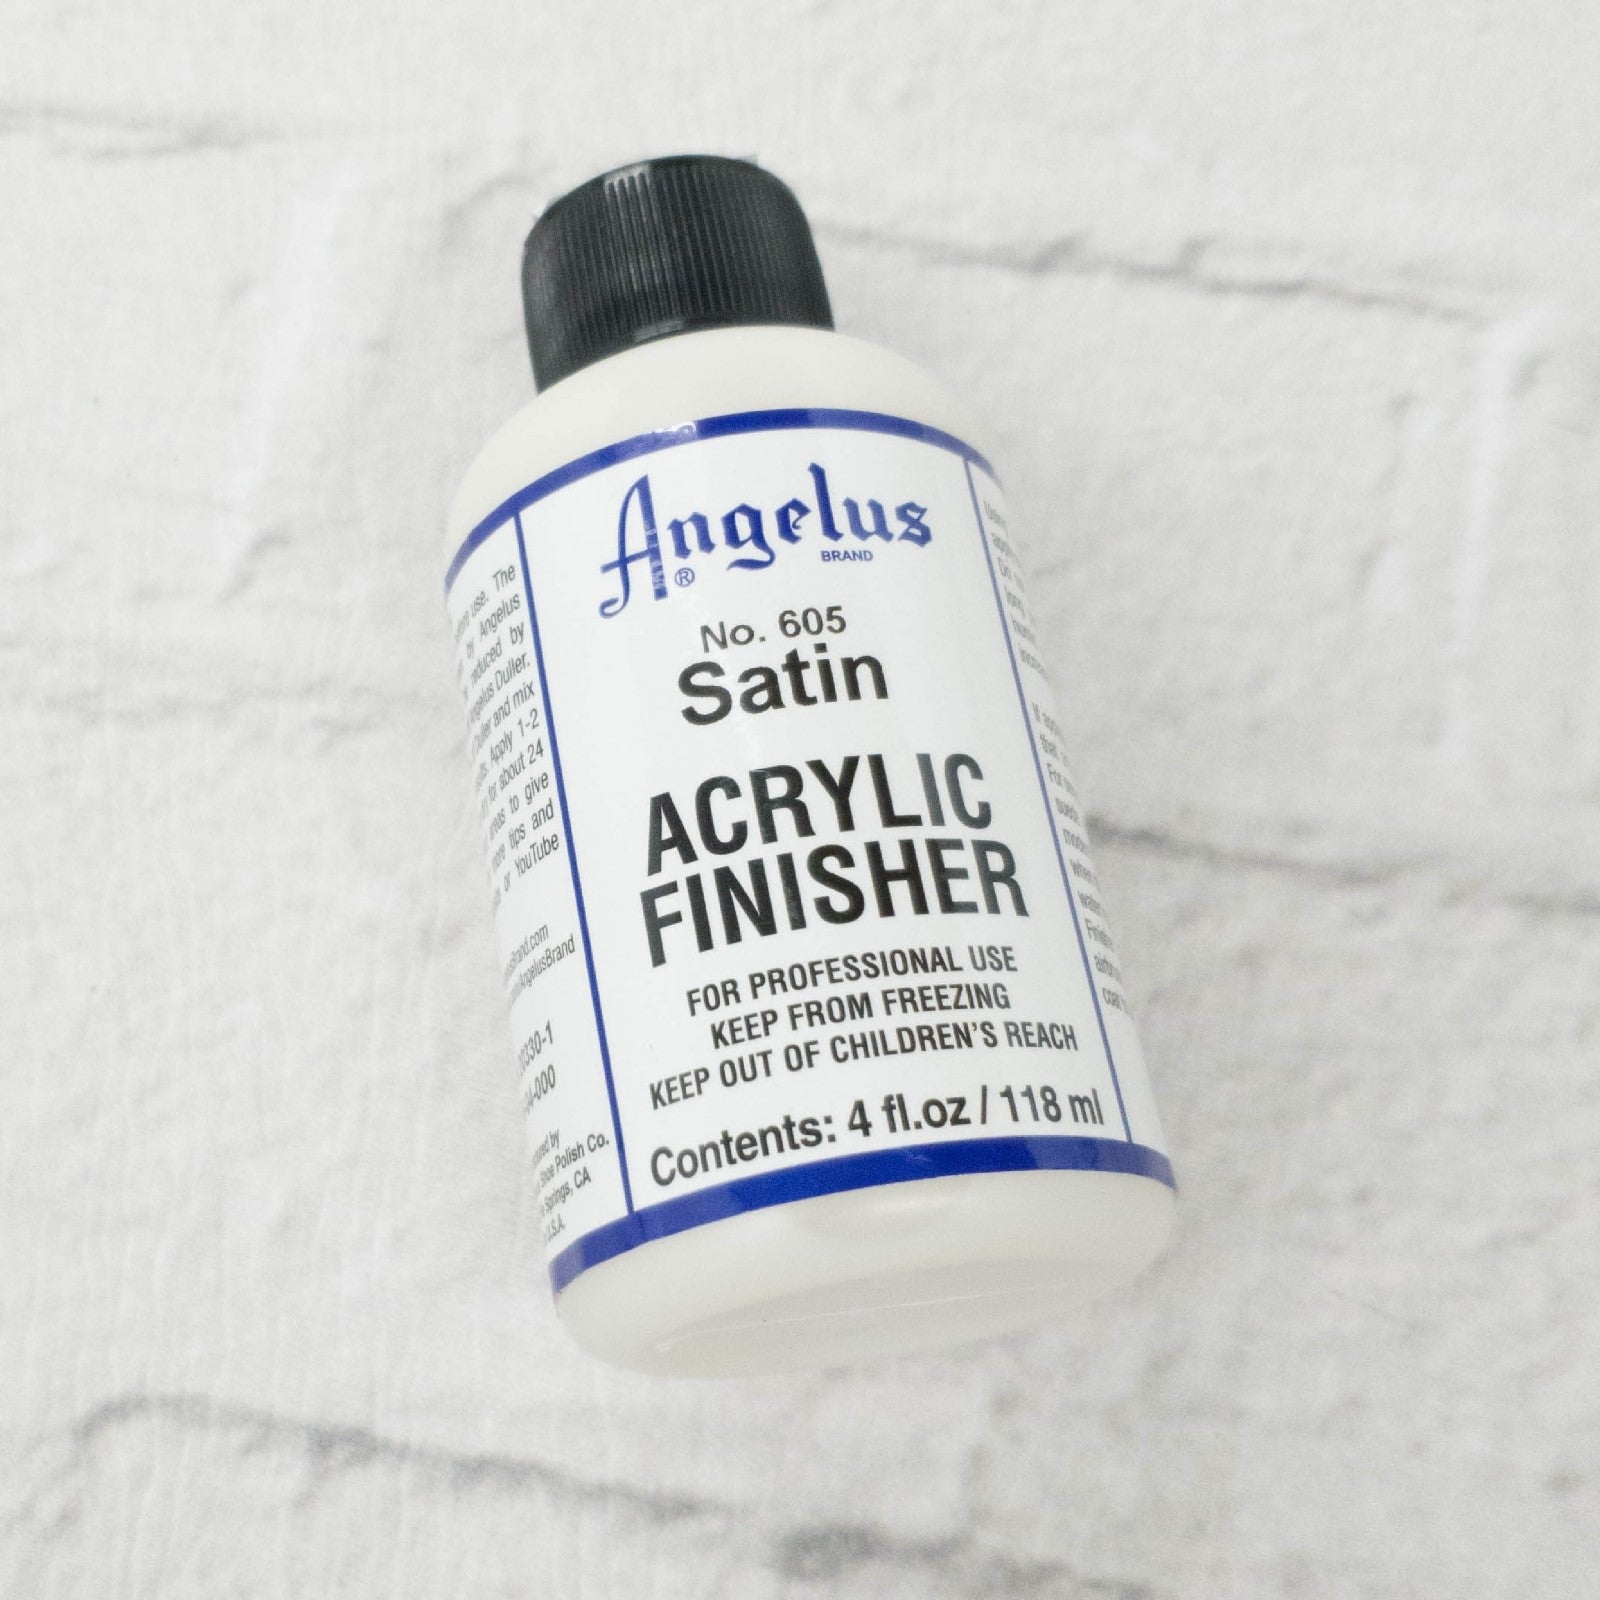 Angelus Brand Acrylic Leather Paint Finisher No. 600 - 4oz